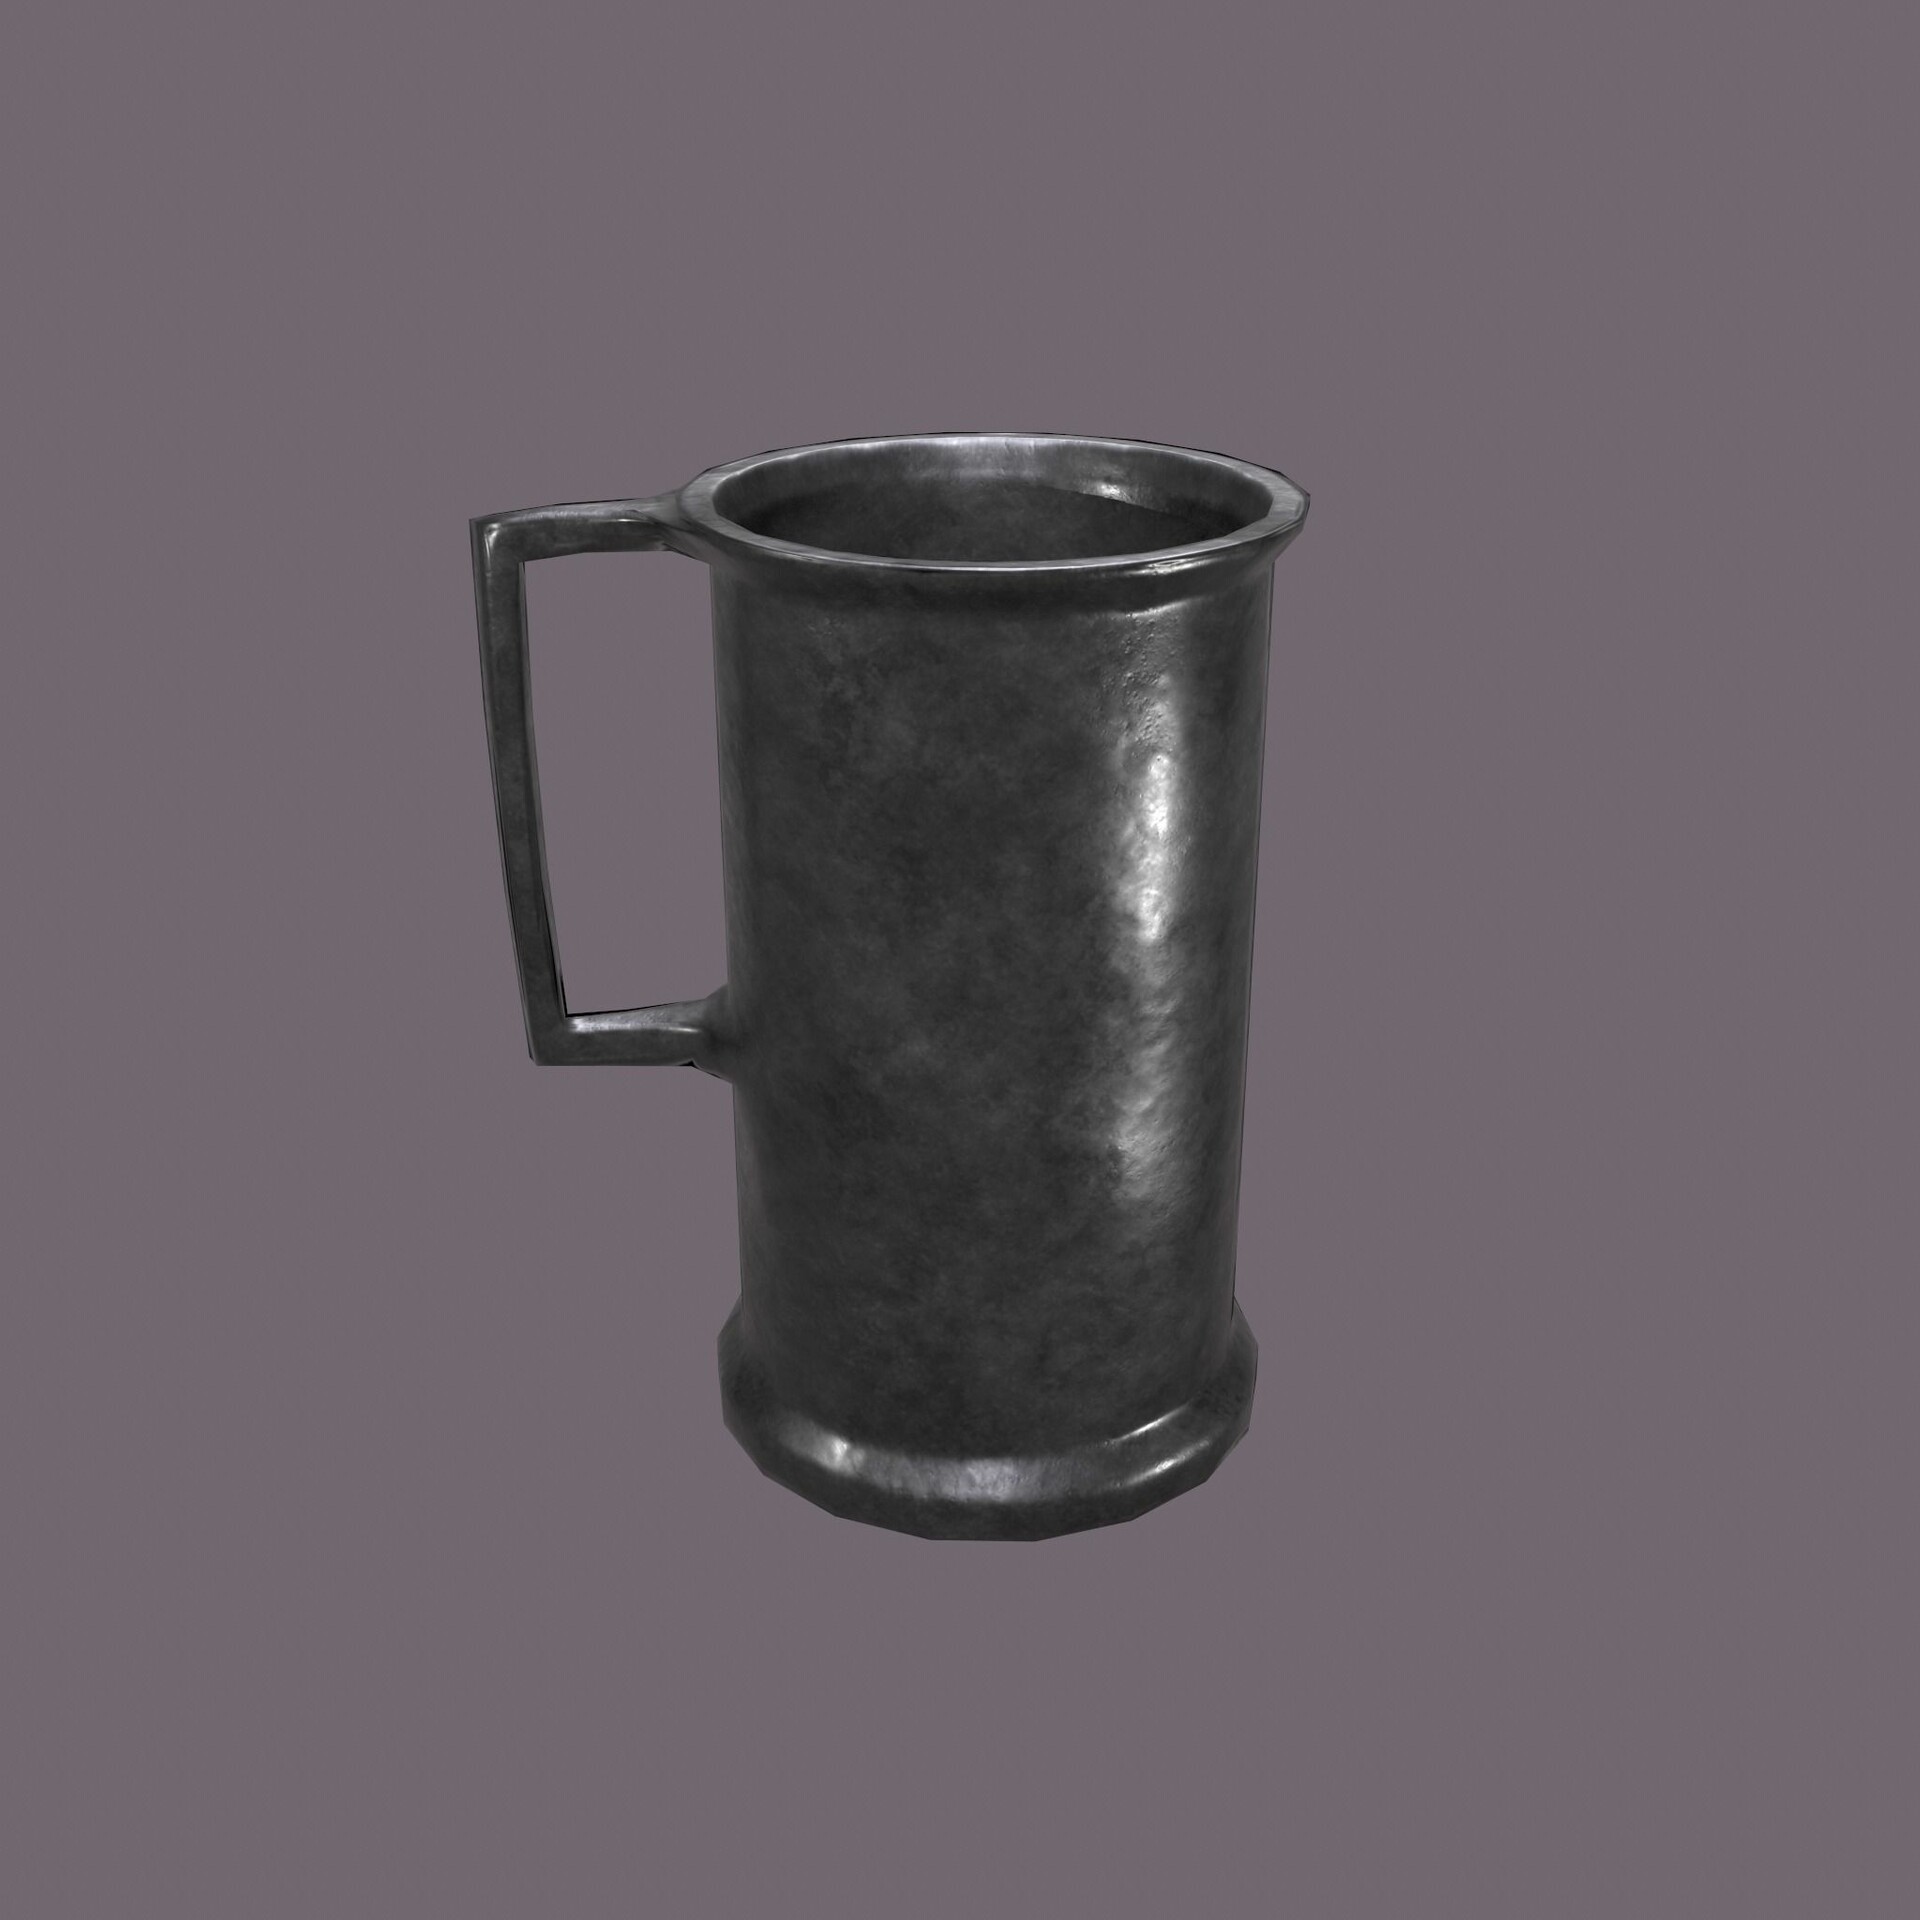 https://cdnb.artstation.com/p/assets/images/images/018/117/465/large/saqlain-raza-medieval-style-metal-cup-3d-model-low-poly-obj-mtl-fbx-01.jpg?1558416959